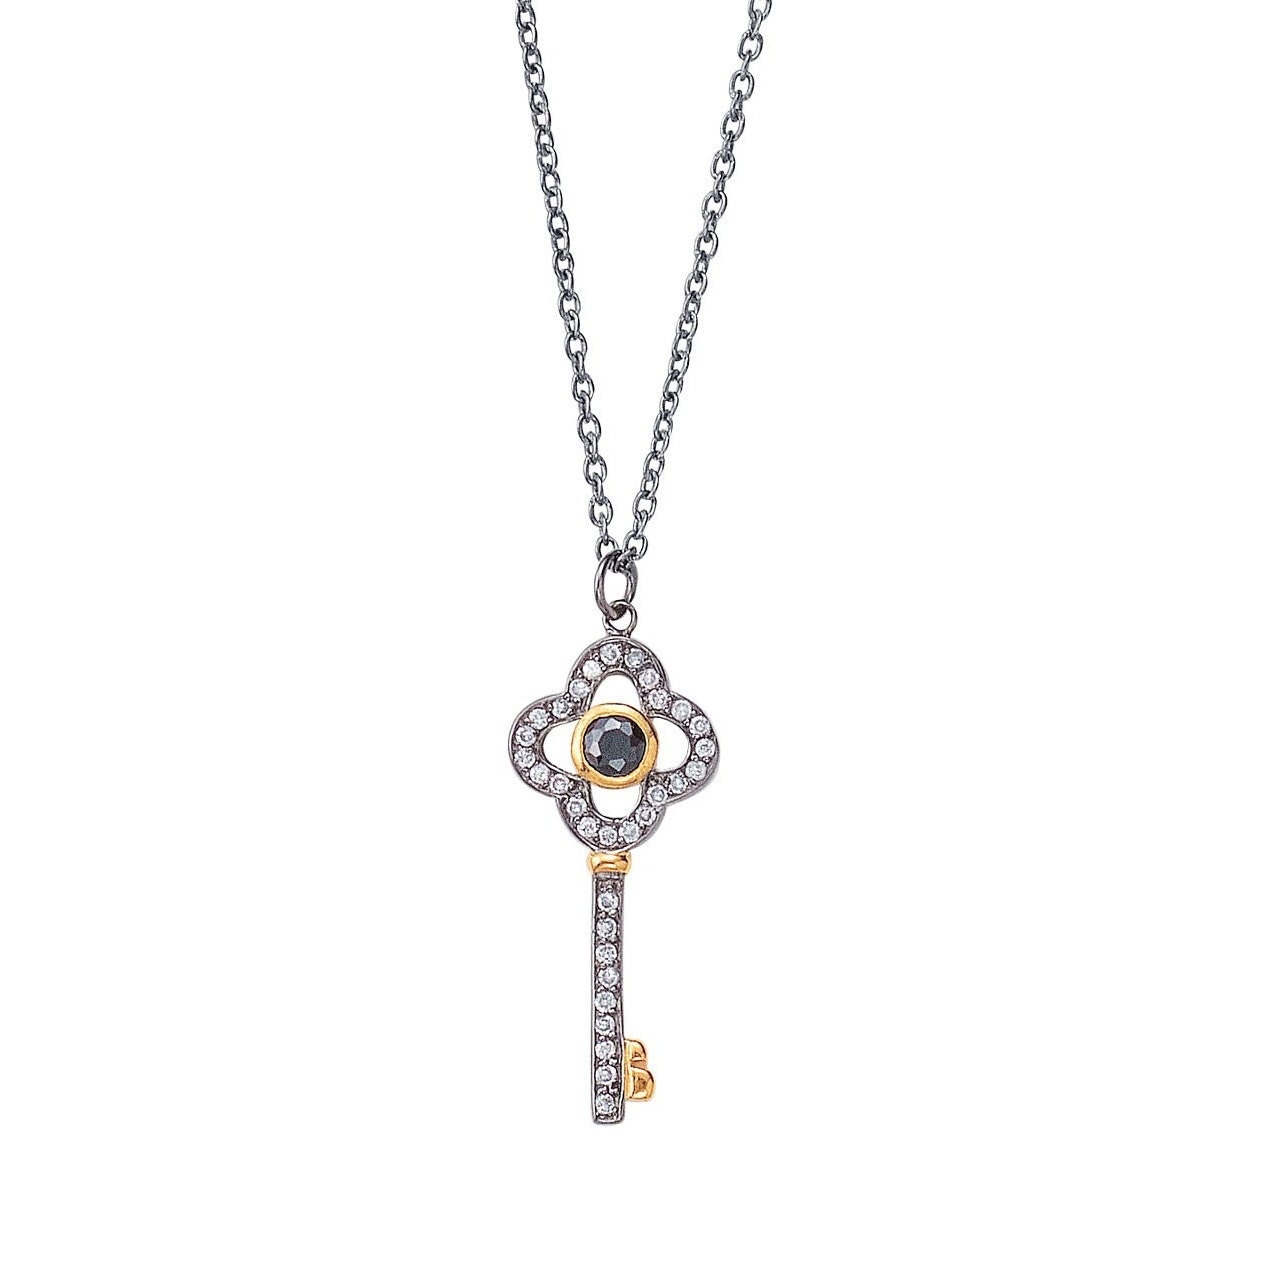 Clover Key Necklace